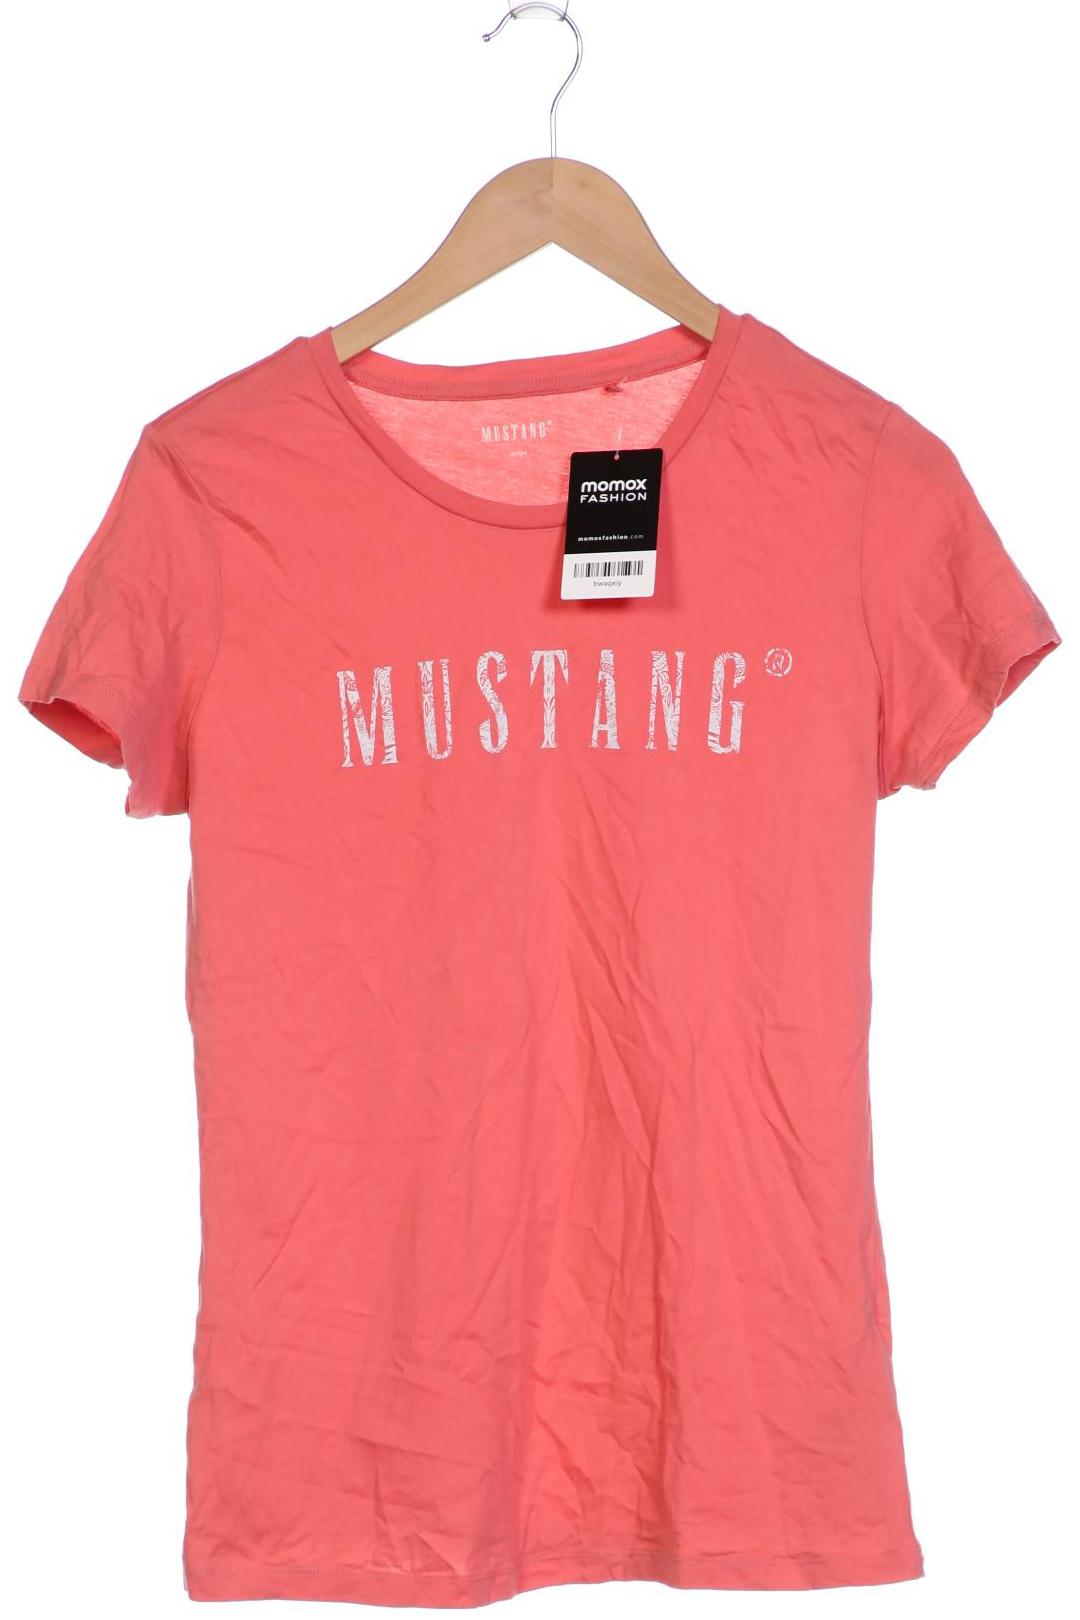 MUSTANG Damen T-Shirt, pink von mustang